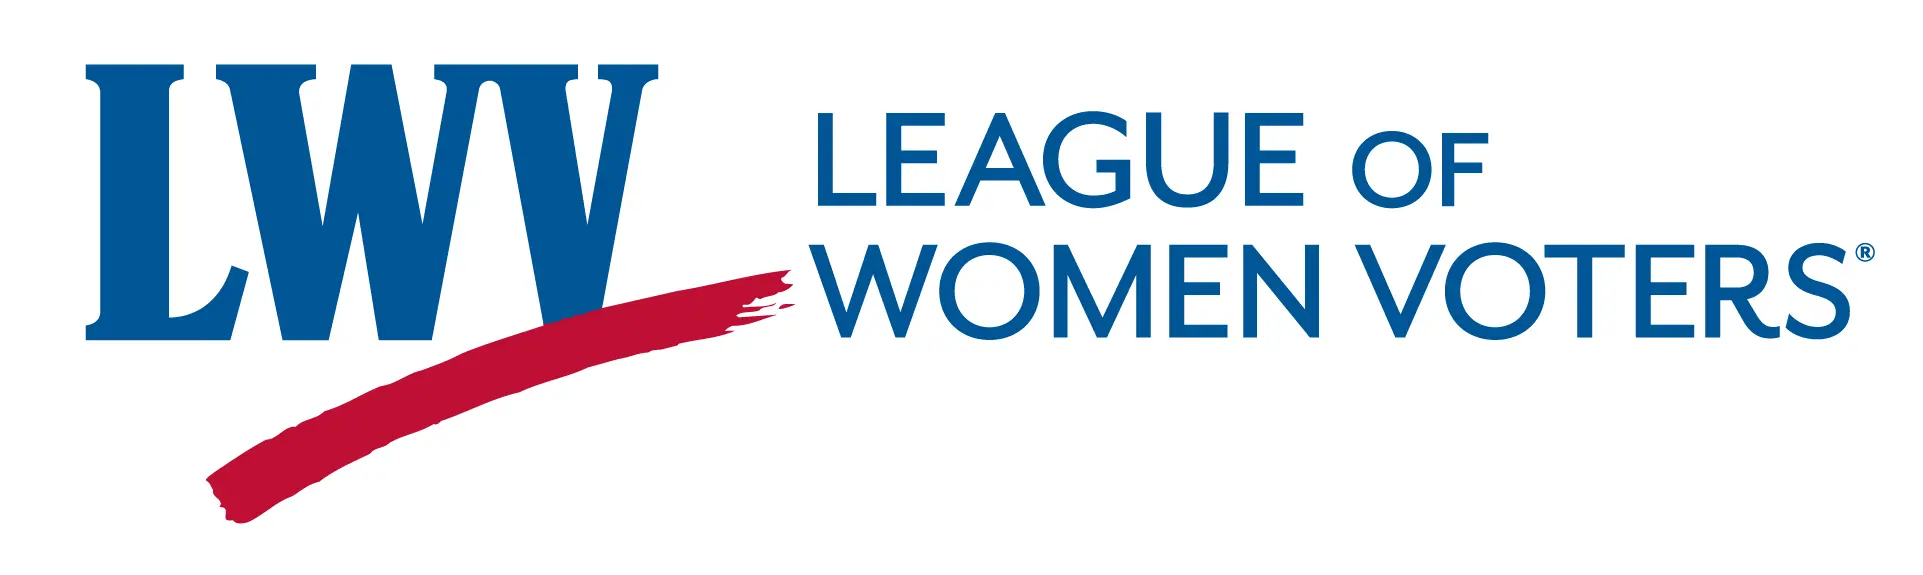 League of Women Voters (LWV)